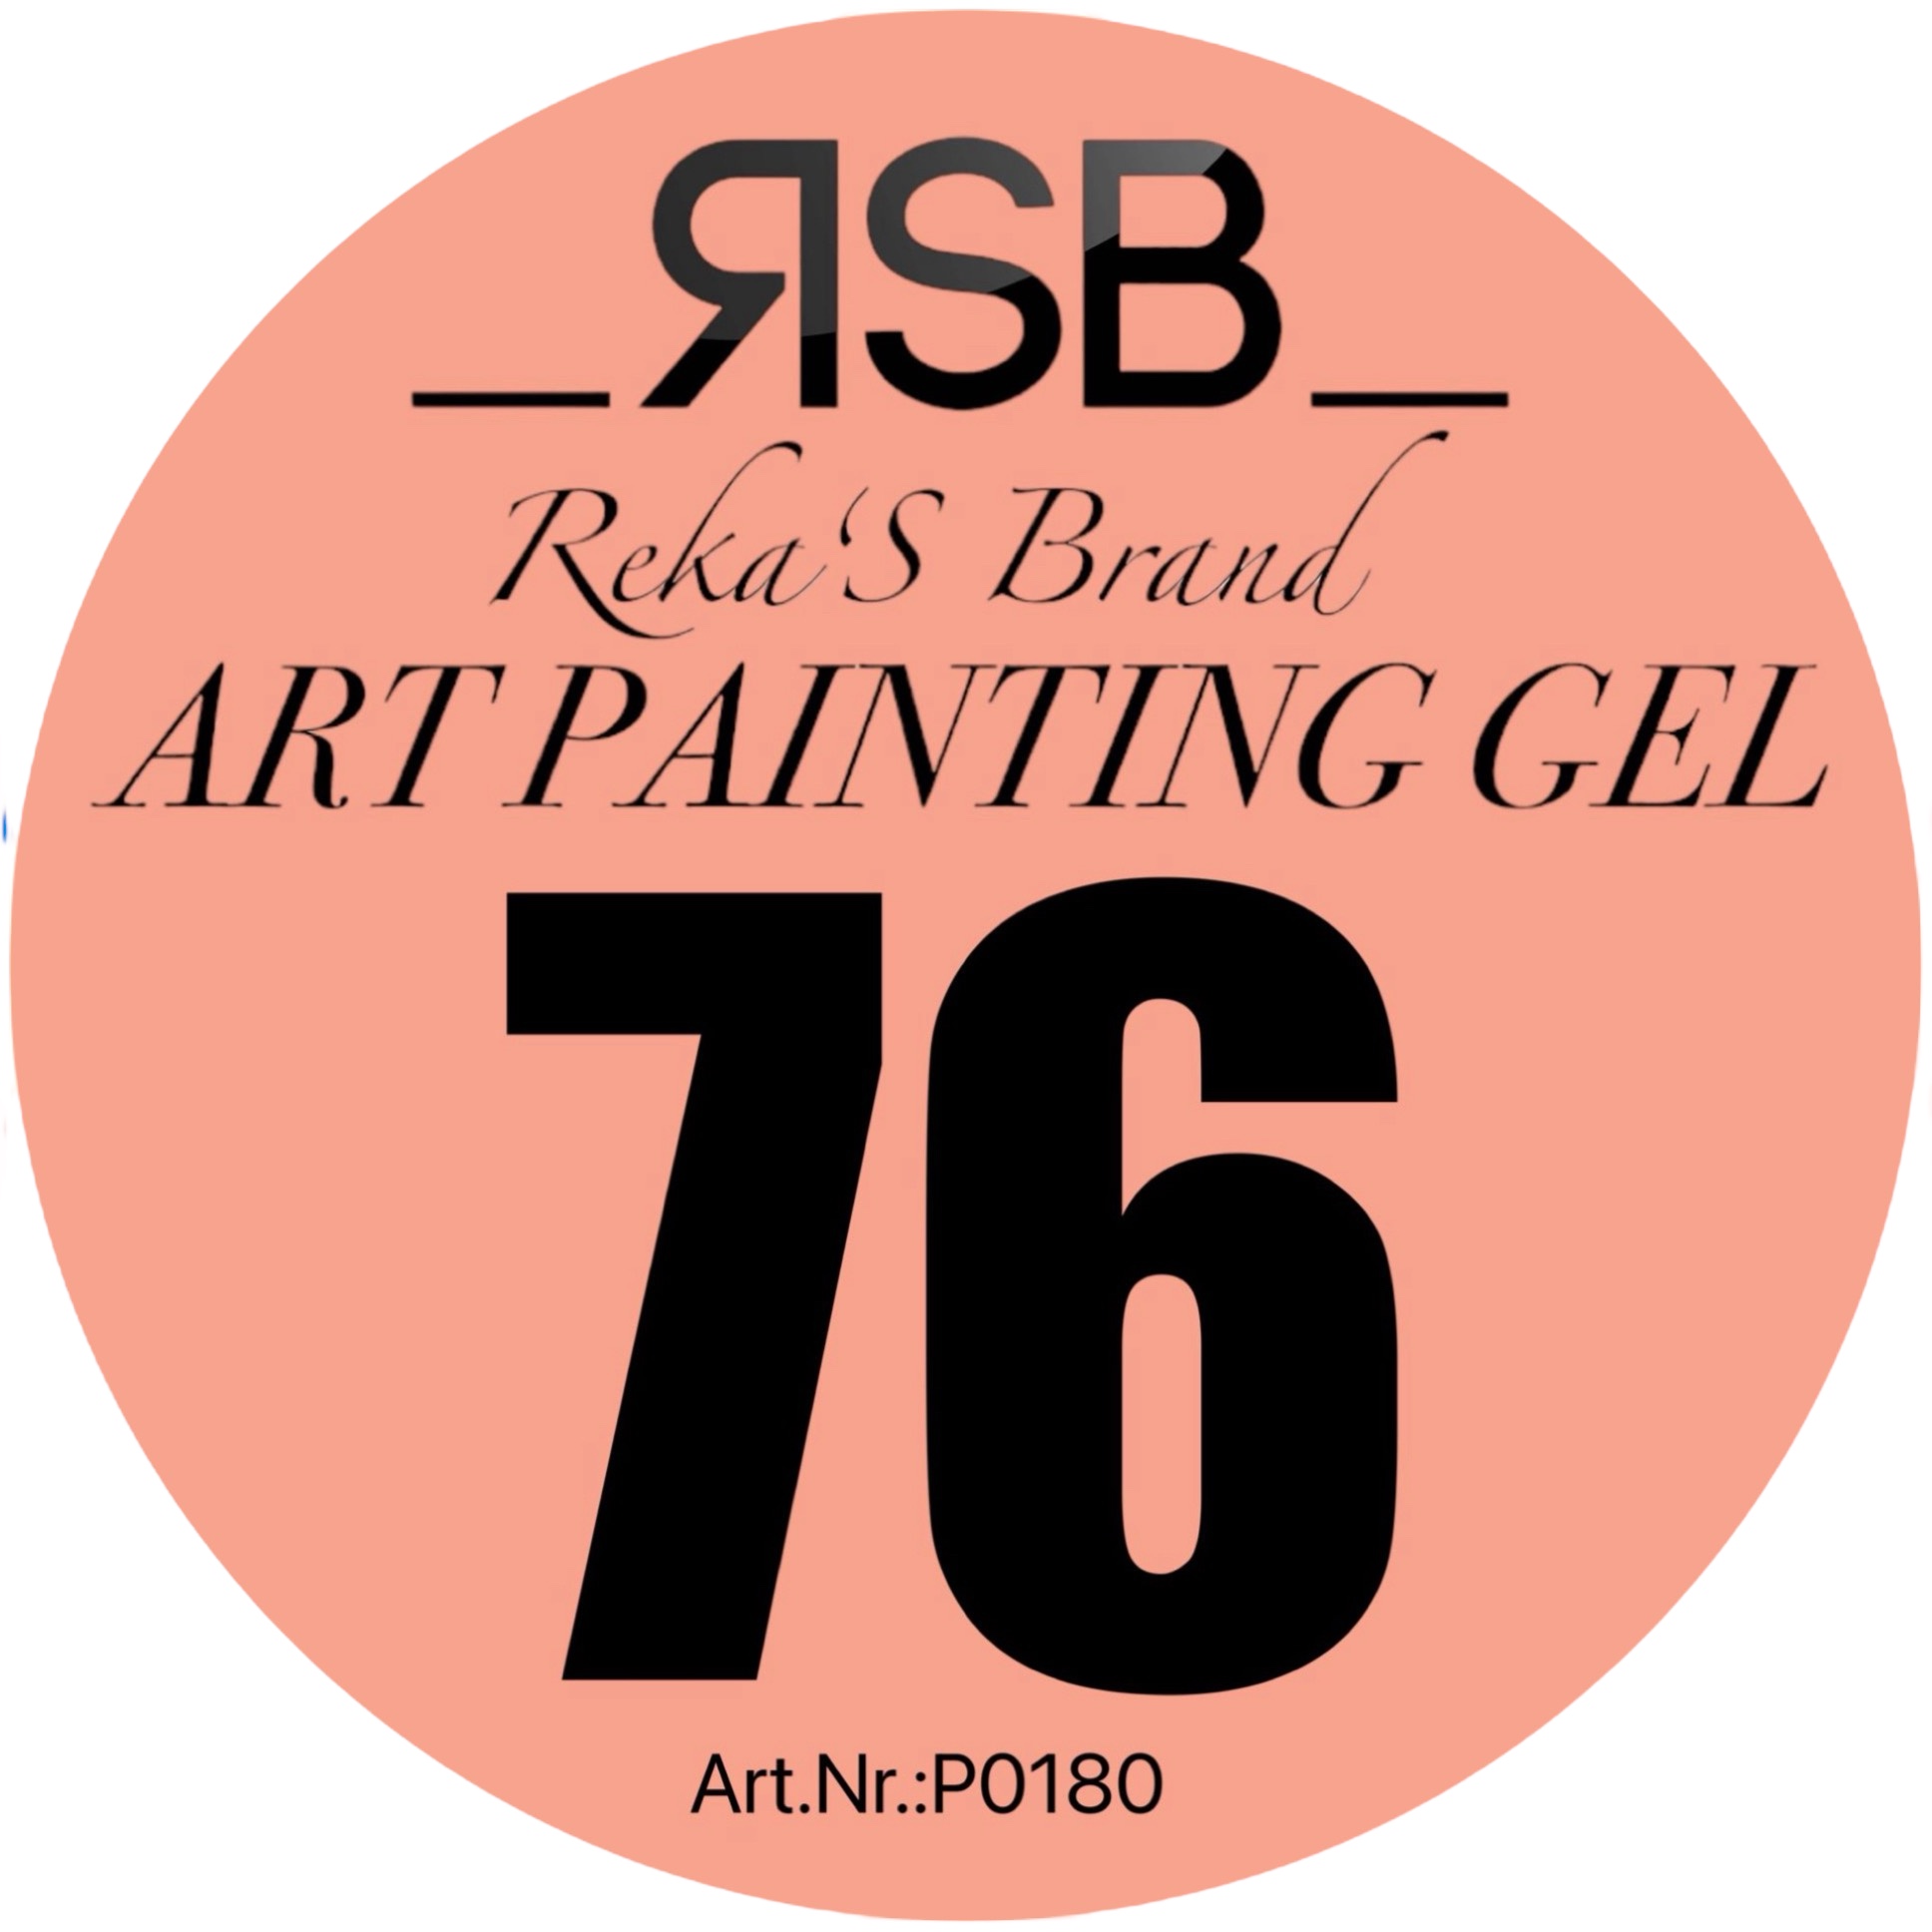 ART PAINTING GEL 76